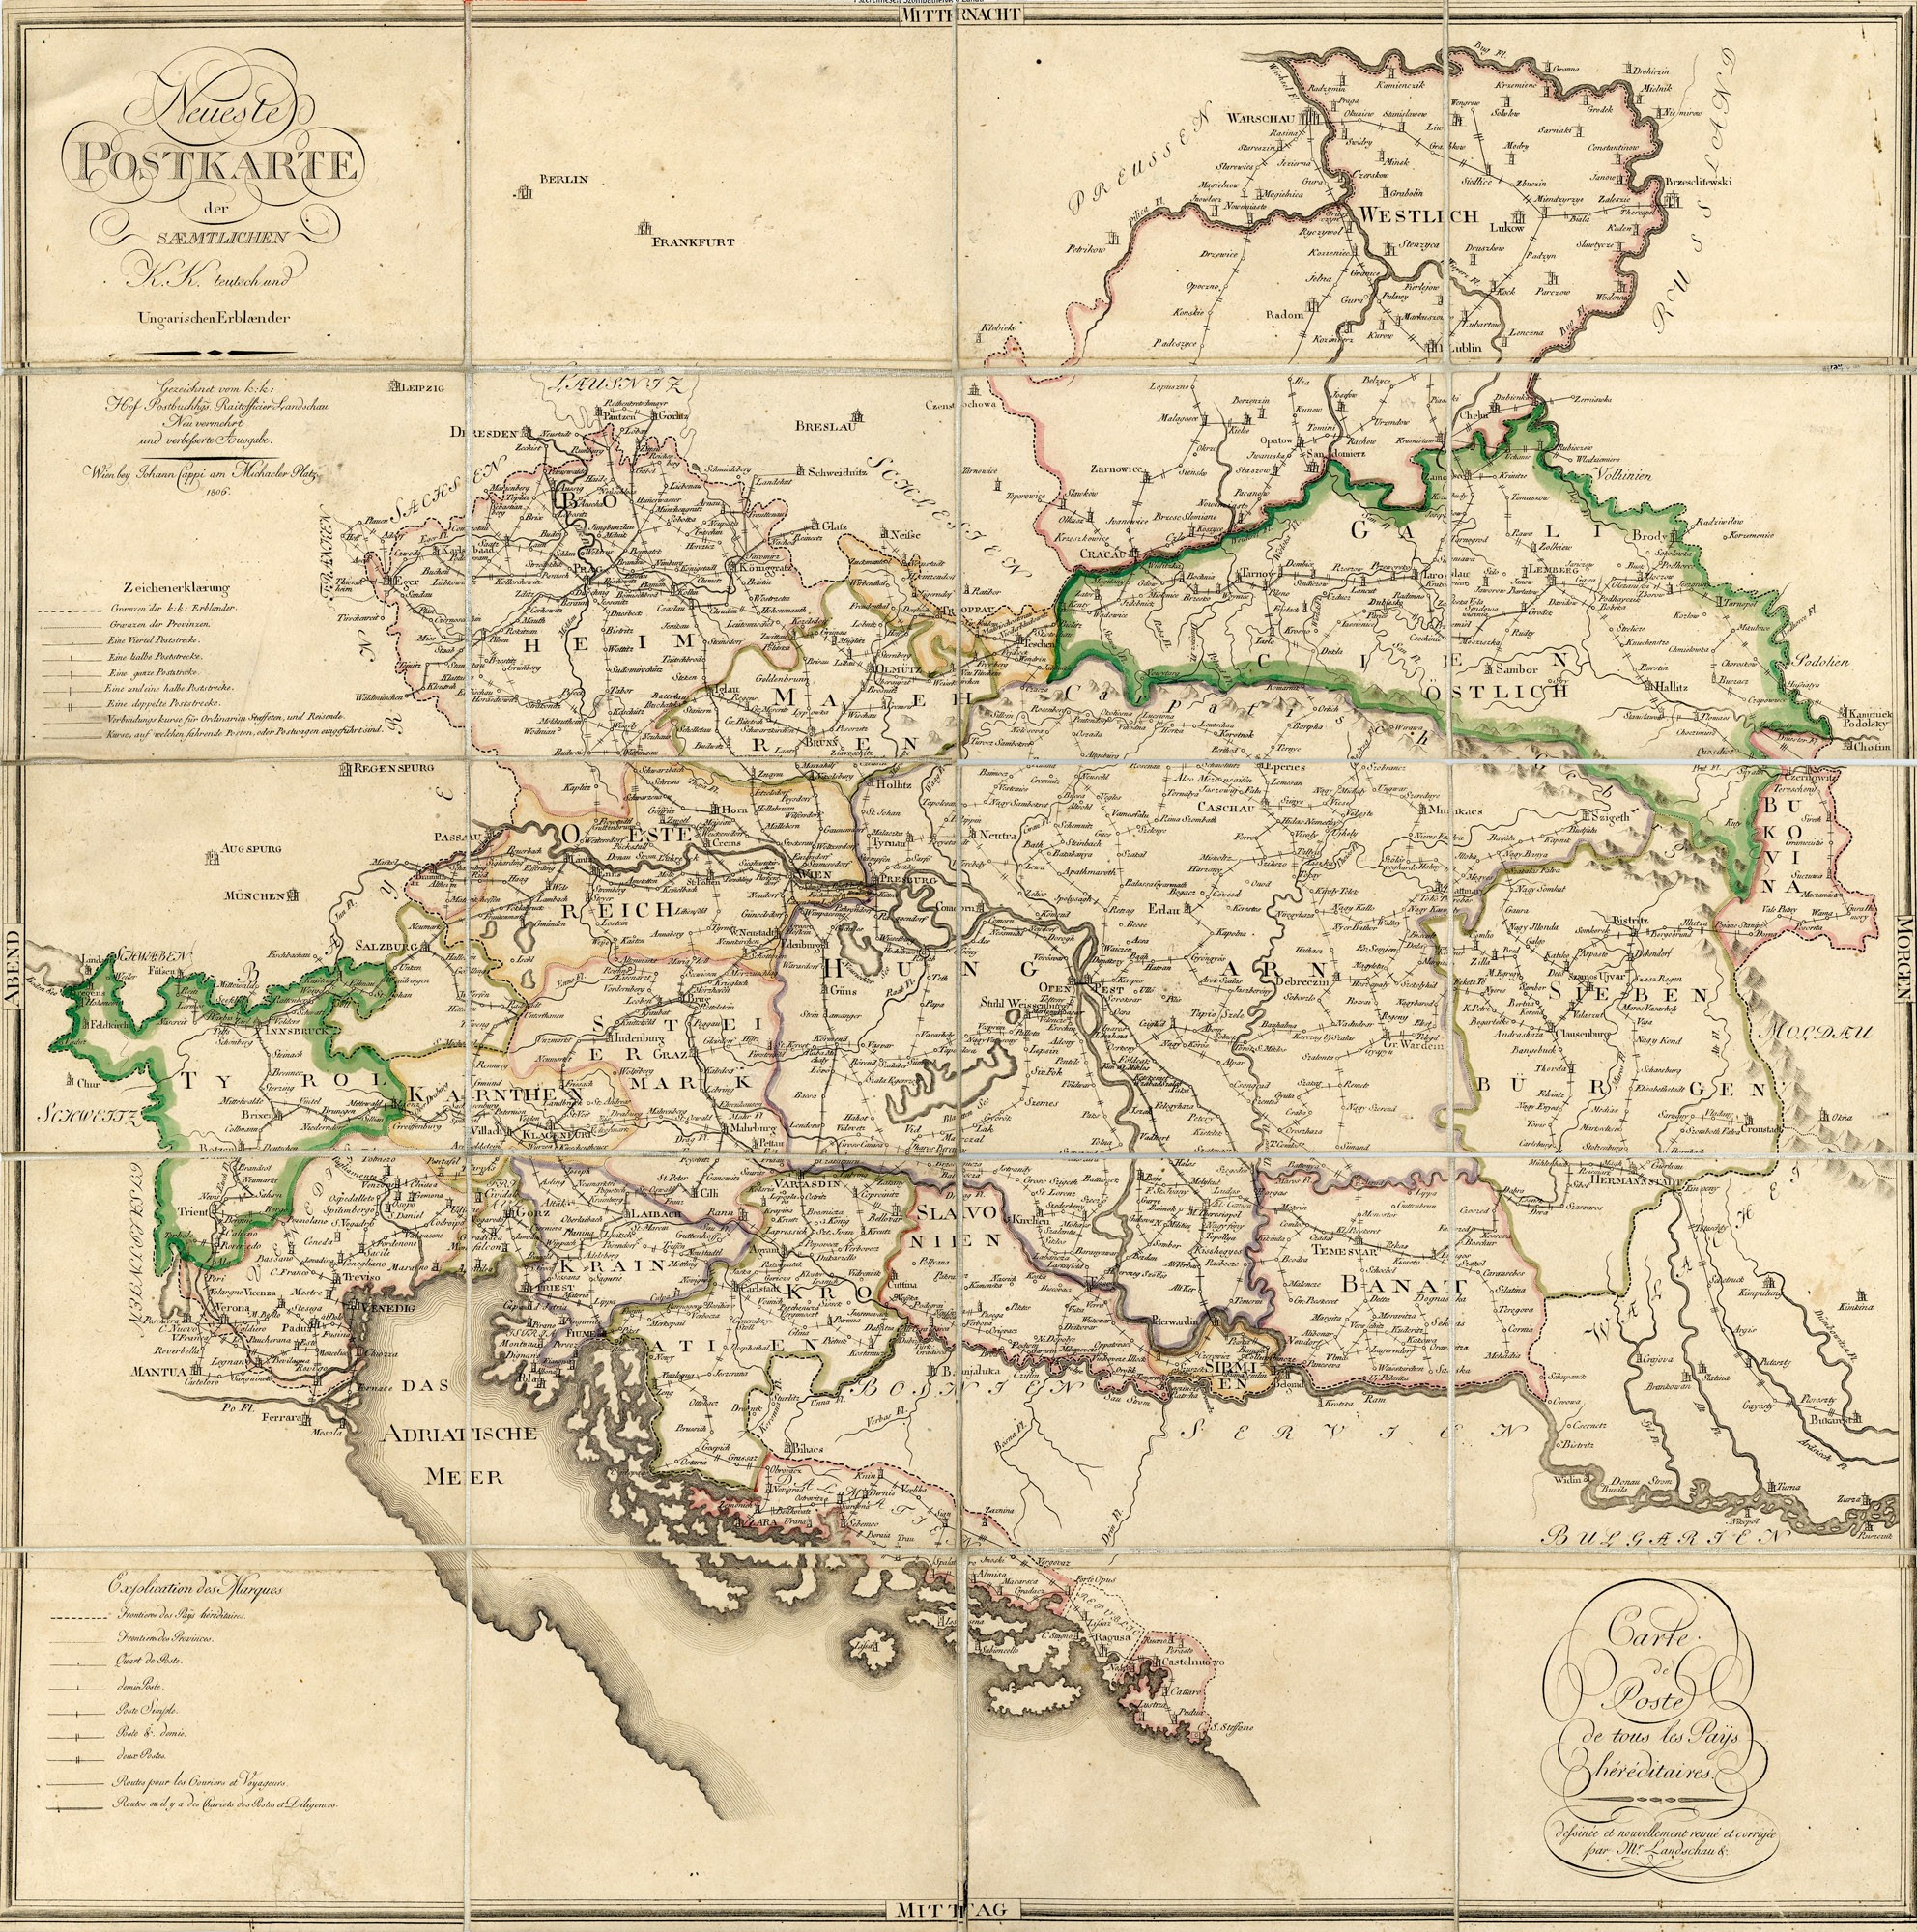 Az Örökös Tartományok új postai térképe – Neueste Post Karte der saemtlichen K.K. teutsch und Ungarischen Erblaender, 1806 (Postamúzeum CC BY-NC-SA)